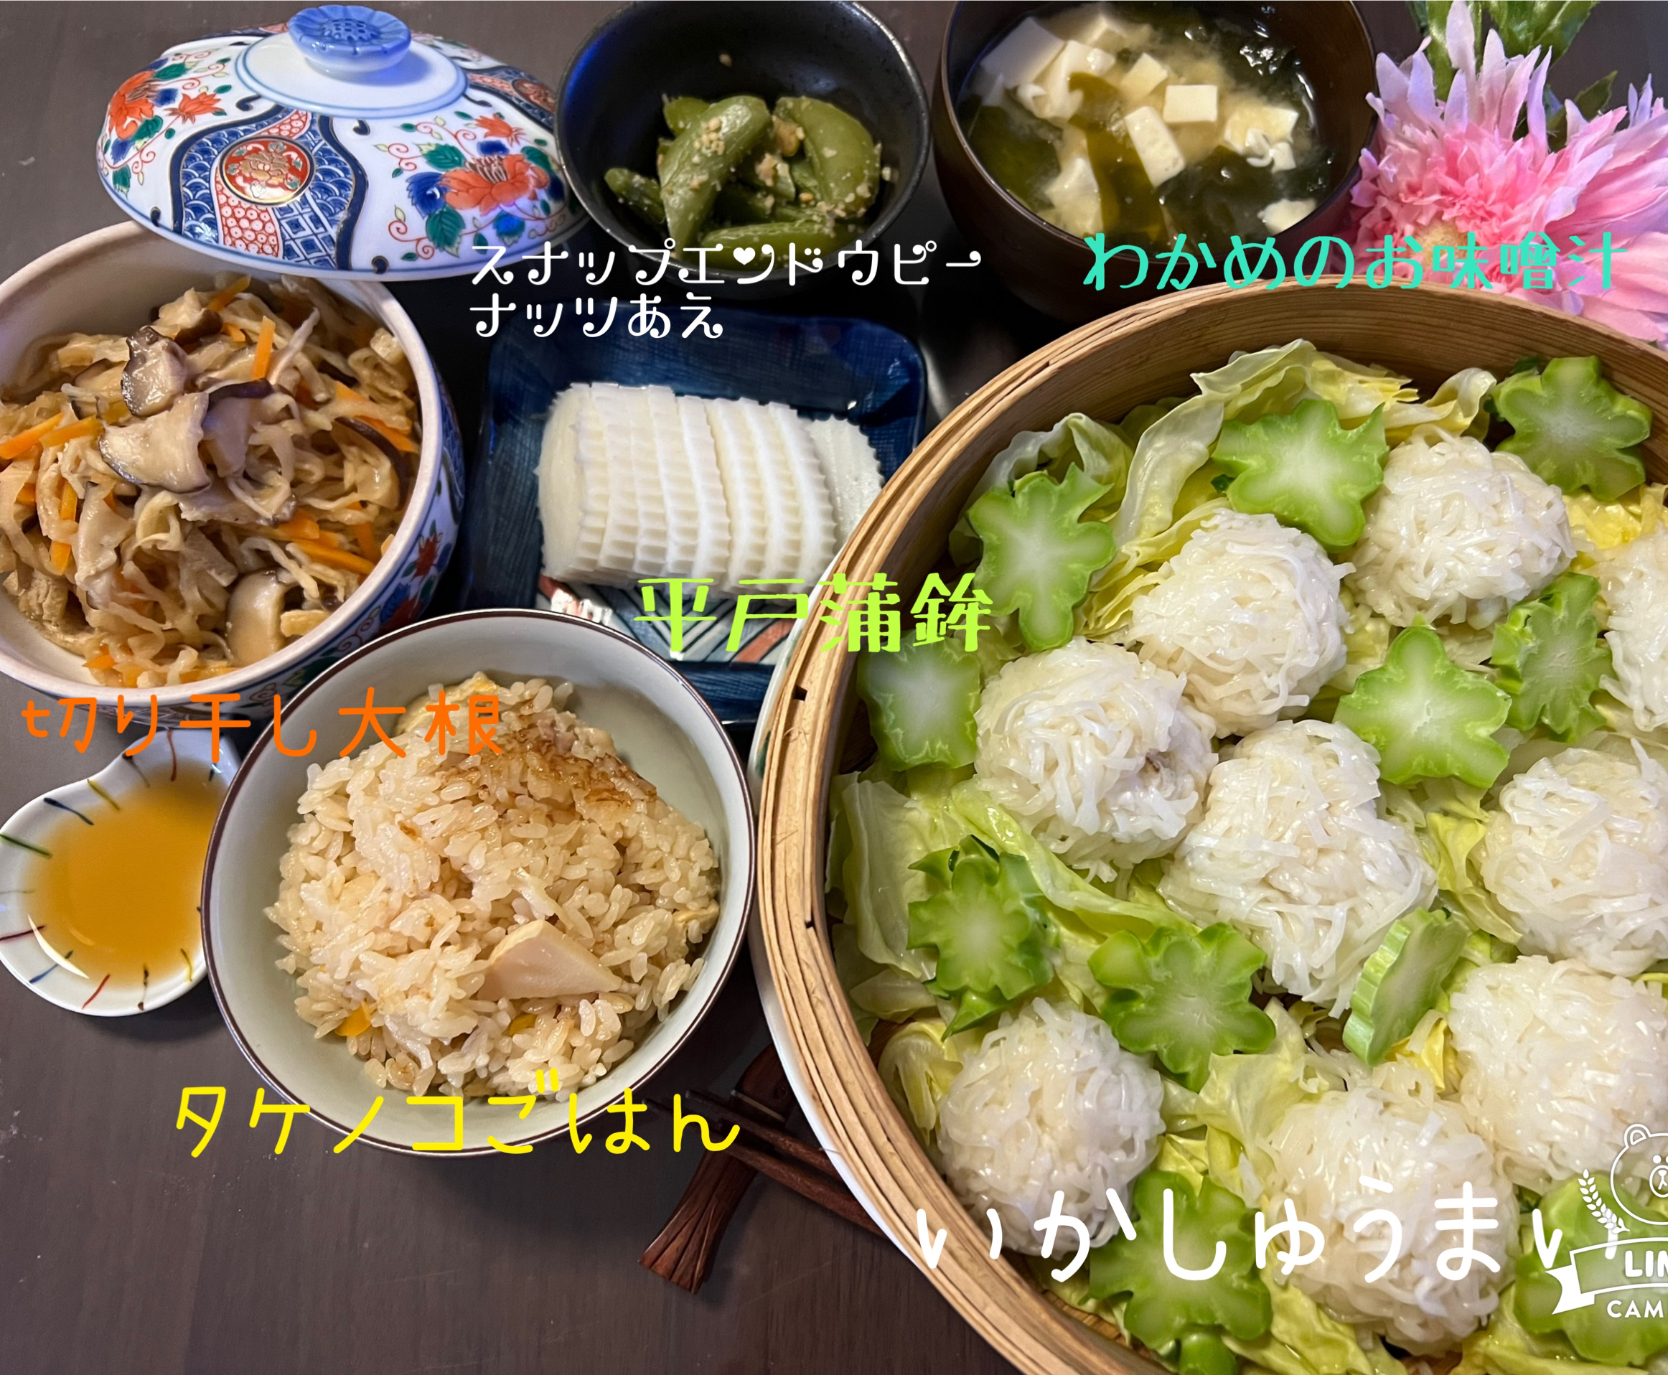 イカシュウマイと筍ご飯🍚と平戸の蒲鉾❤️九州祭り❤️